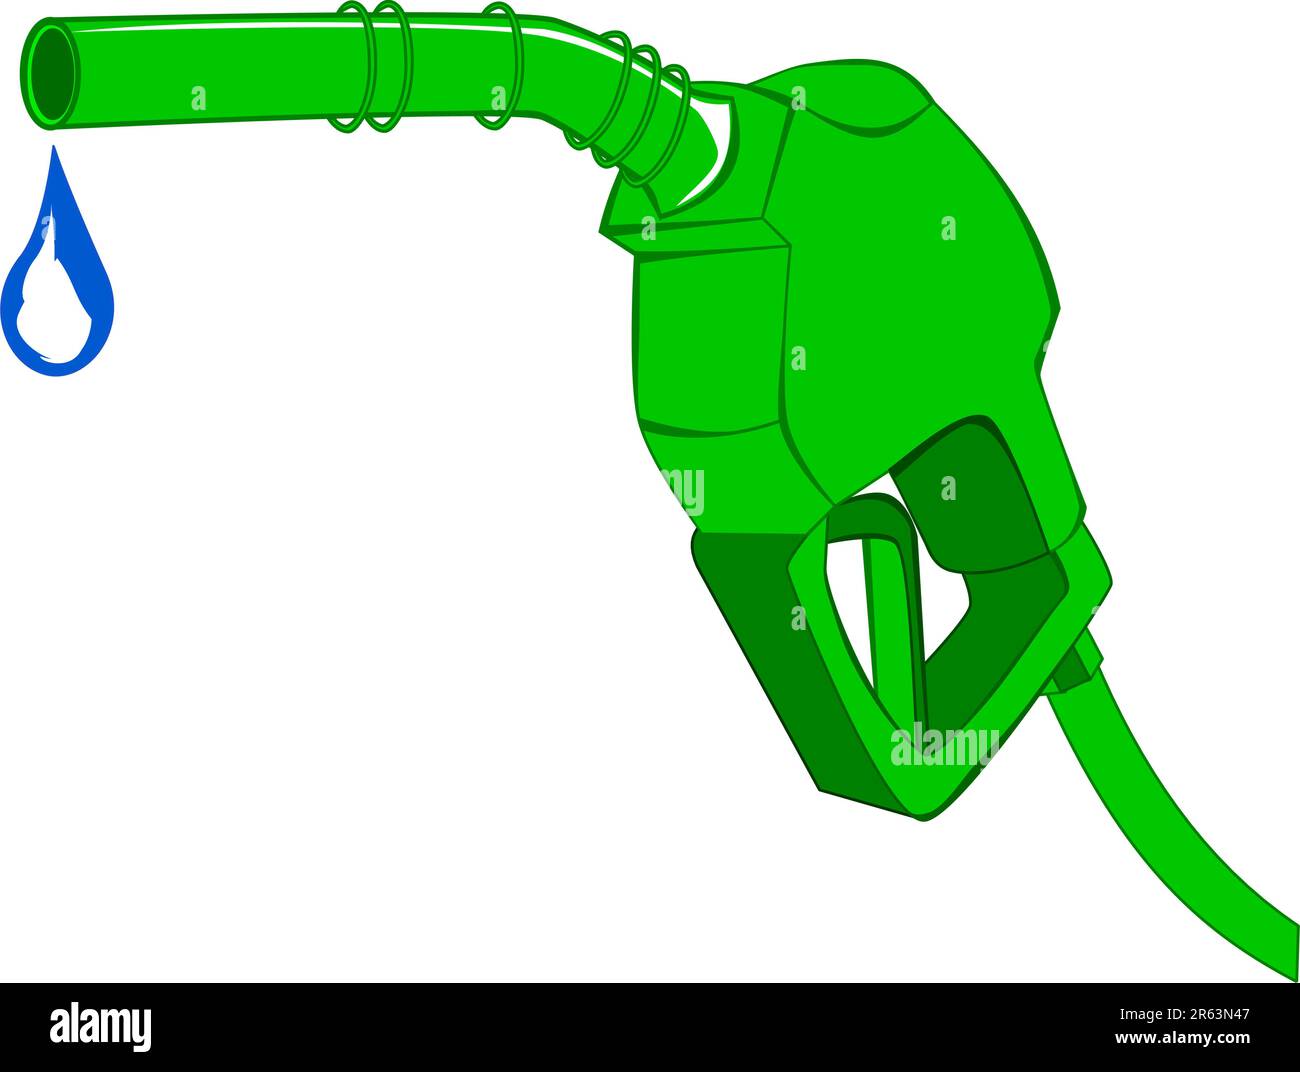 Buse de pompe à gaz verte avec eau goutte à goutte Illustration de Vecteur